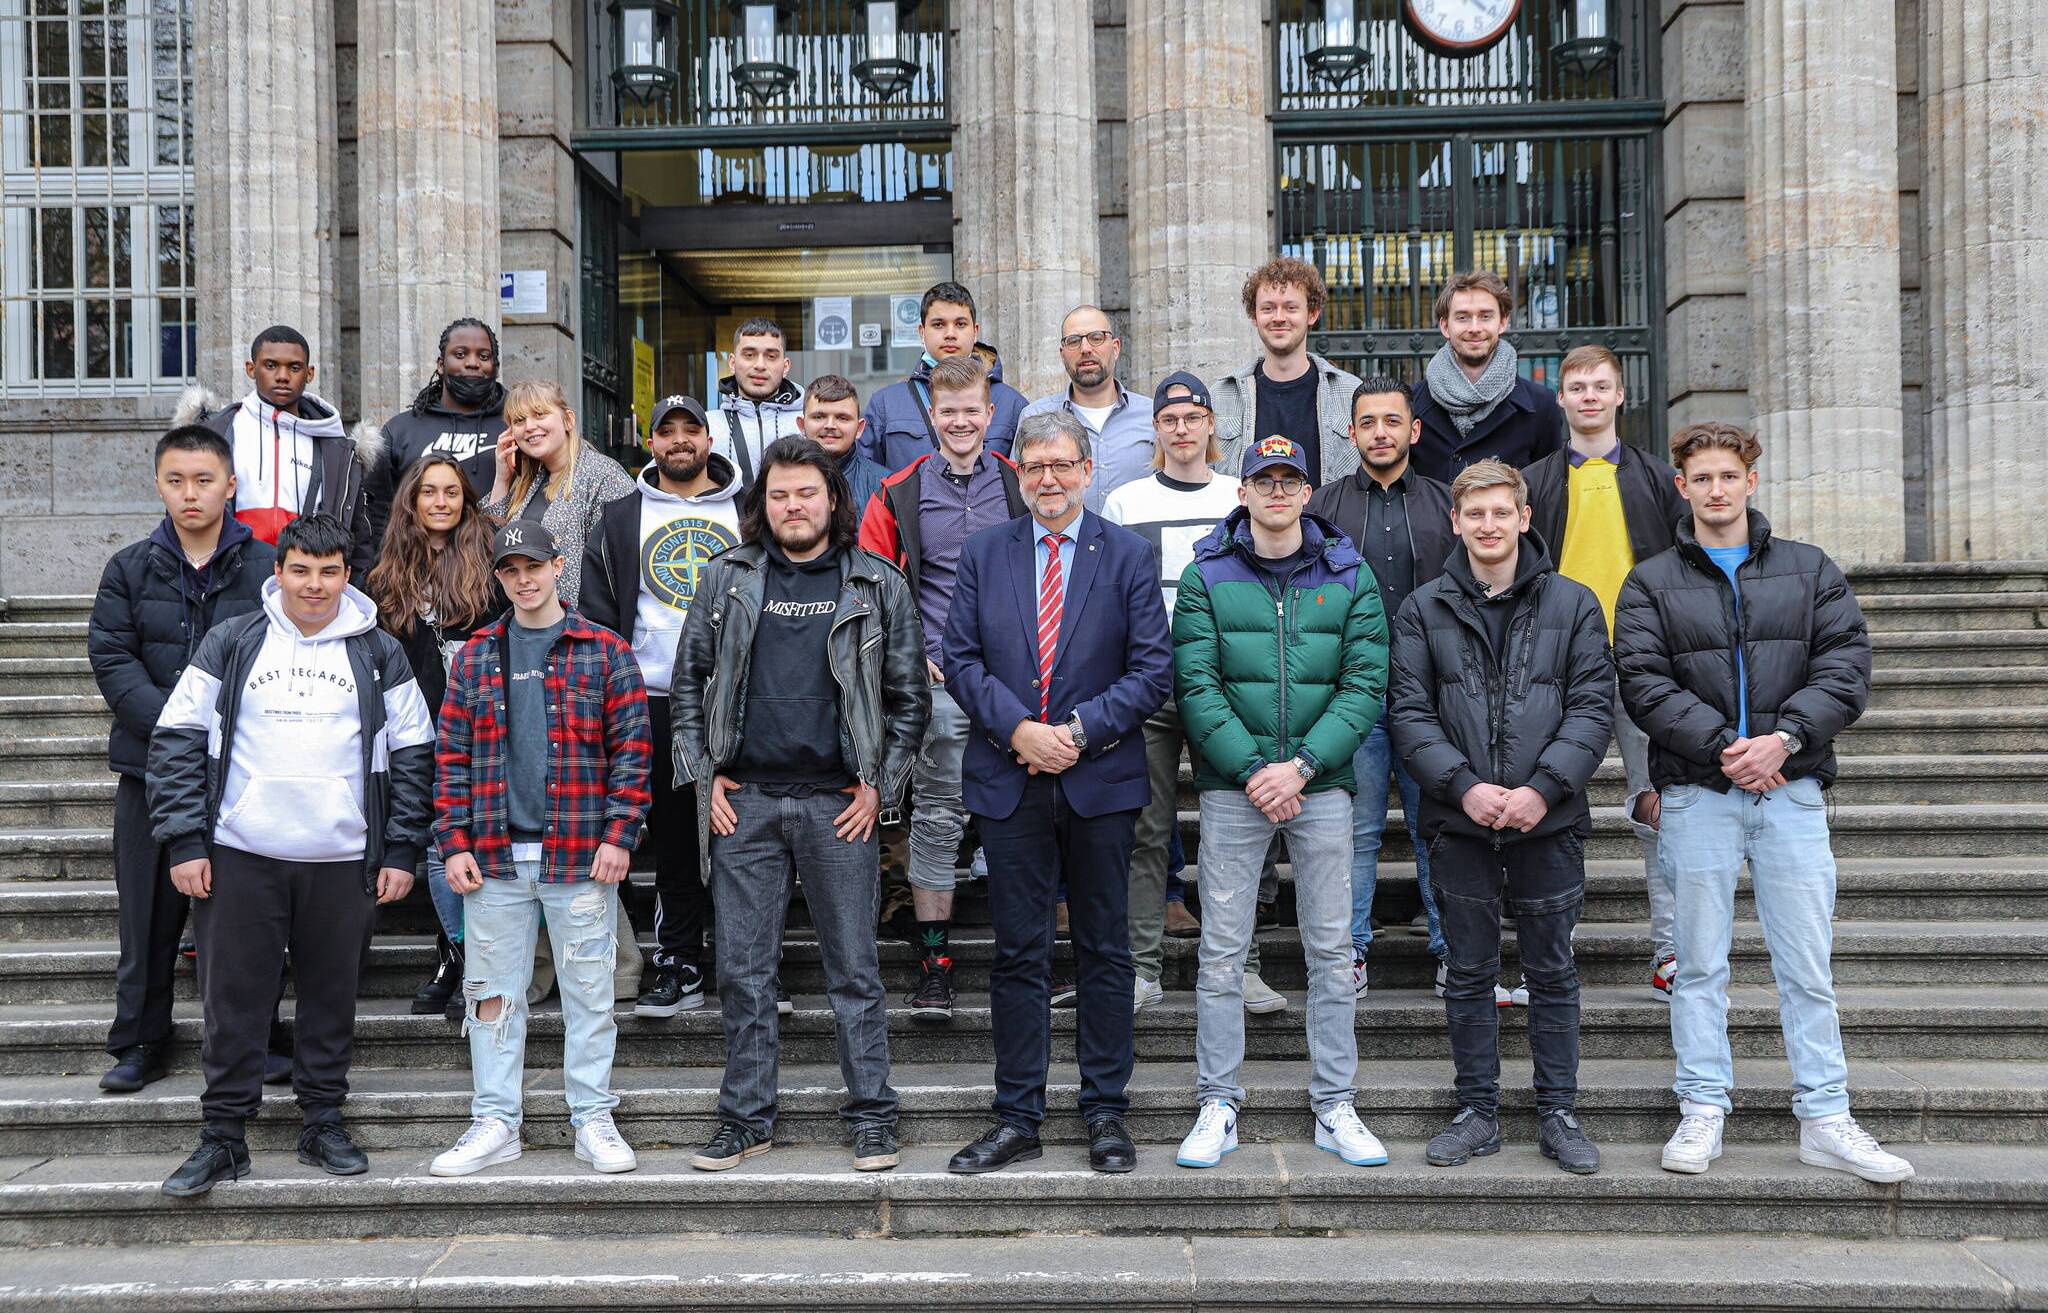  Das Gruppenfoto mit Bürgermeister Heiner Fragemann auf der Rathaustreppe. 